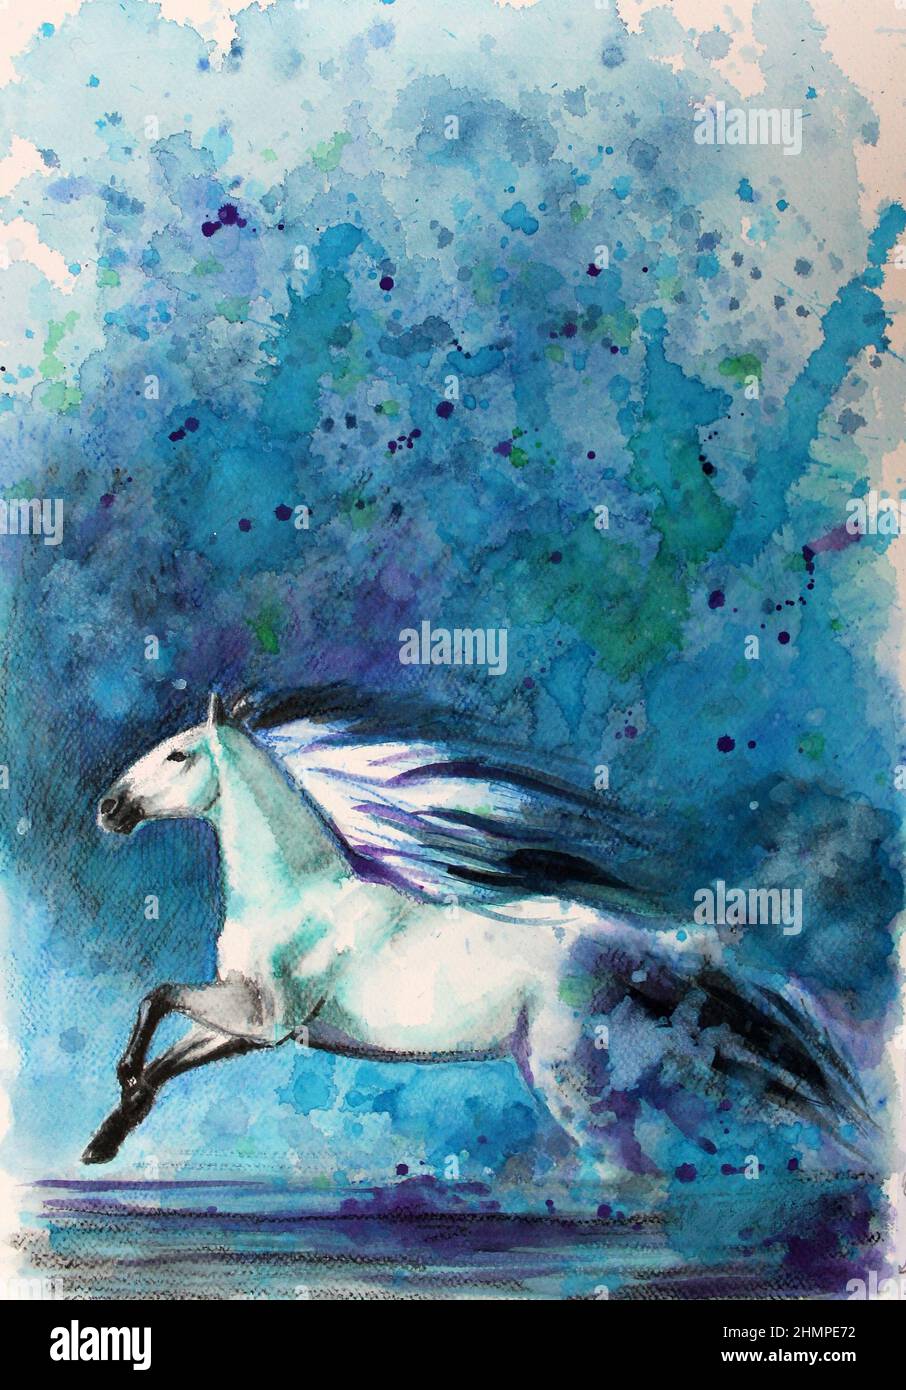 Un cavallo bianco che corre attraverso l'acqua. Acquerello impressionista realizzato con il metodo della verniciatura a spruzzo. I colori dominanti sono blu e viola. Foto Stock